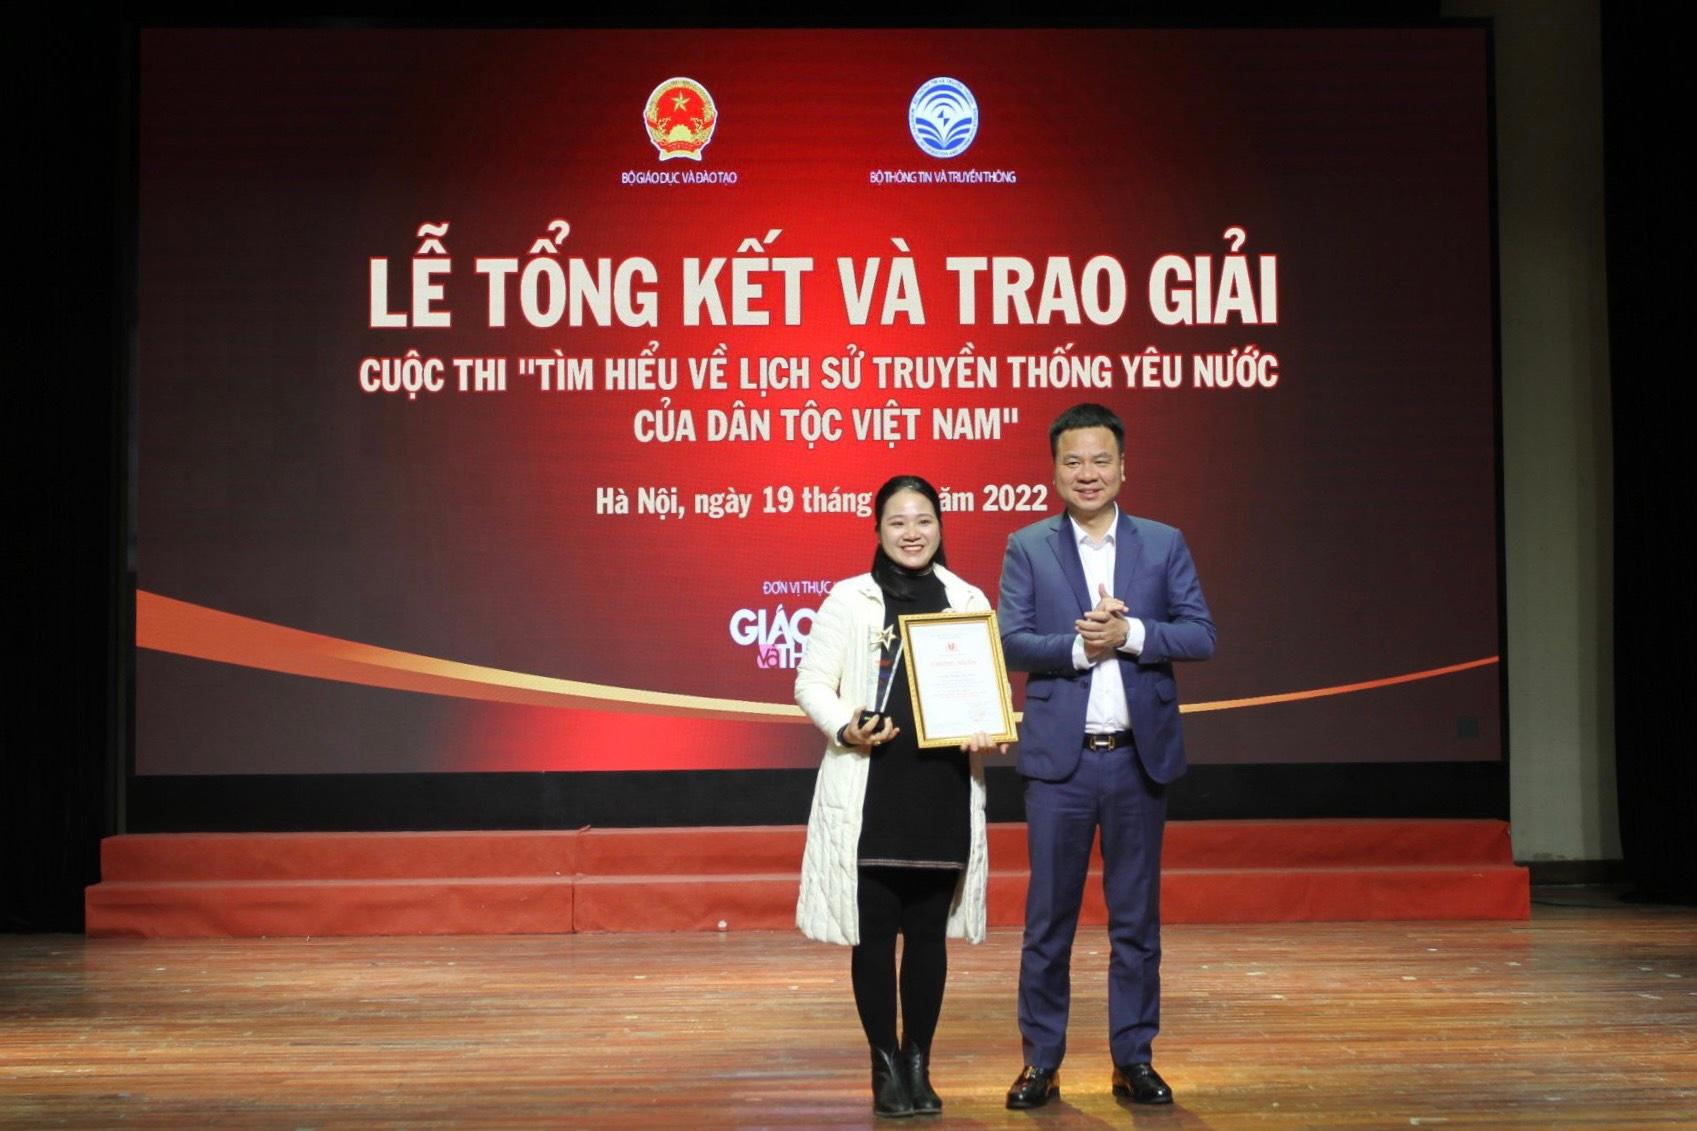 Nhà báo Triệu Ngọc Lâm, Tổng Biên tập báo Giáo dục và Thời đại trao giải cho tác giả đạt giải Nhất, giáo viên Nguyễn Thị Sang.